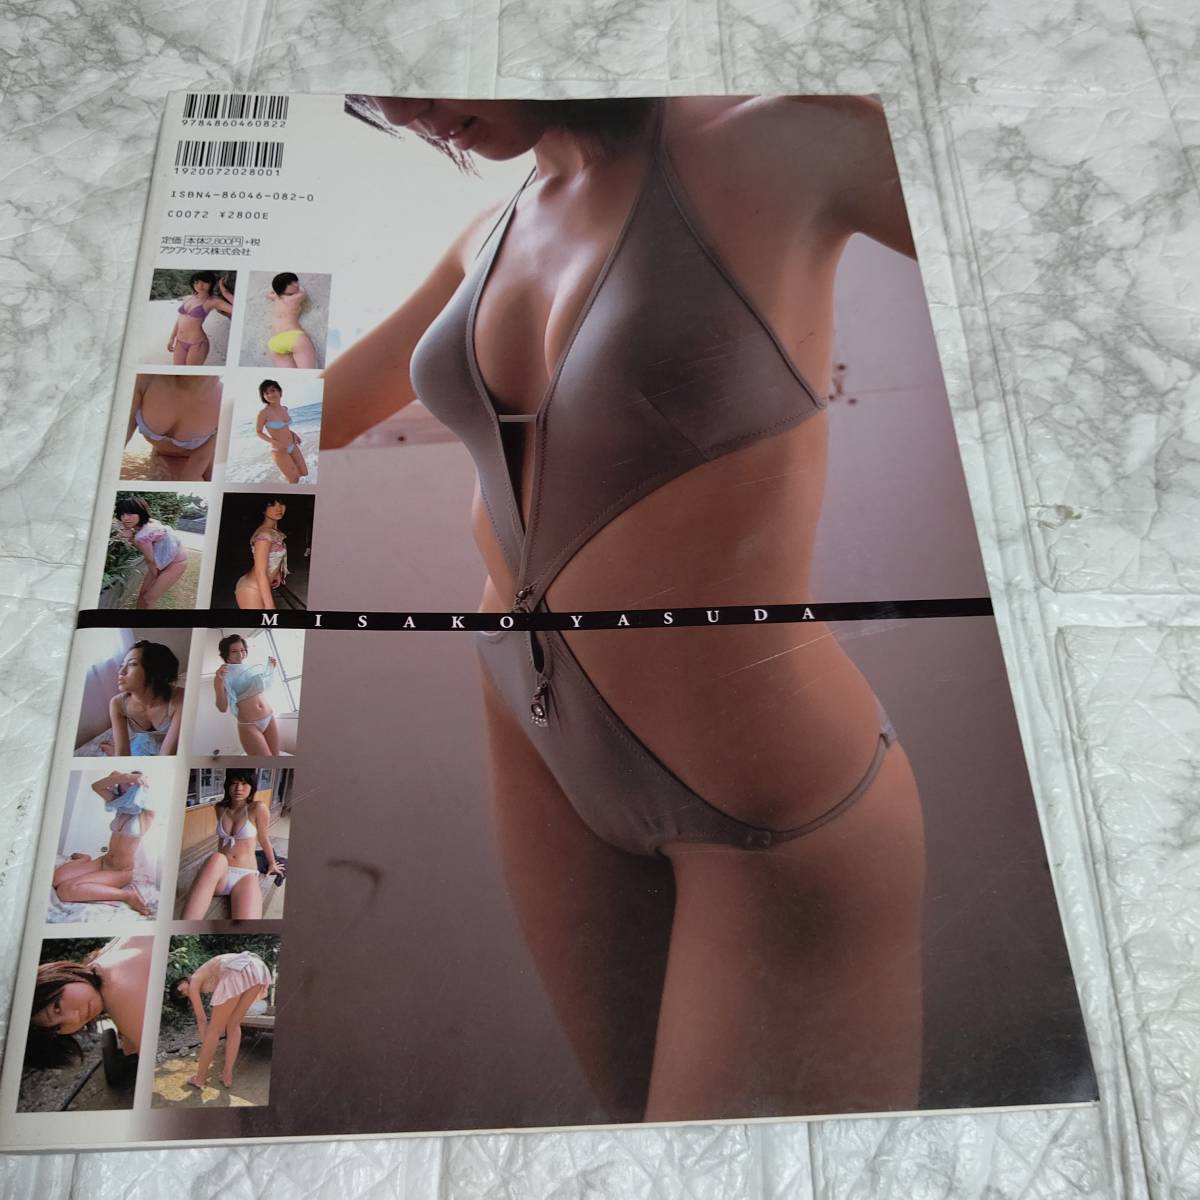  Yasuda Misako photoalbum tiara bikini model swimsuit bikini underwear 